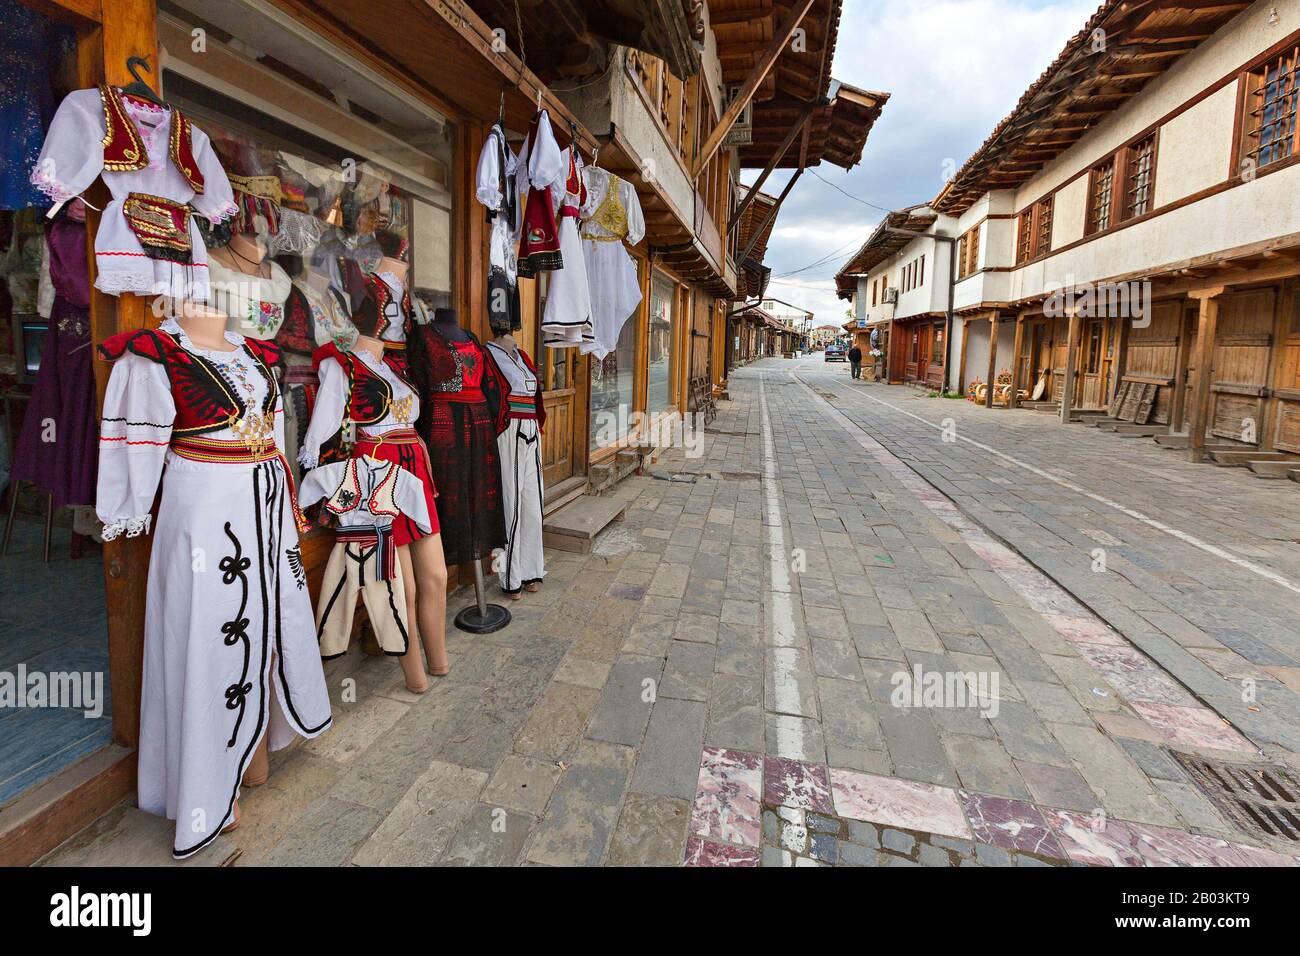 Negozio che vende costumi nazionali del Kosovo su strada acciottolata, in Gjakova, Kosovo Foto Stock